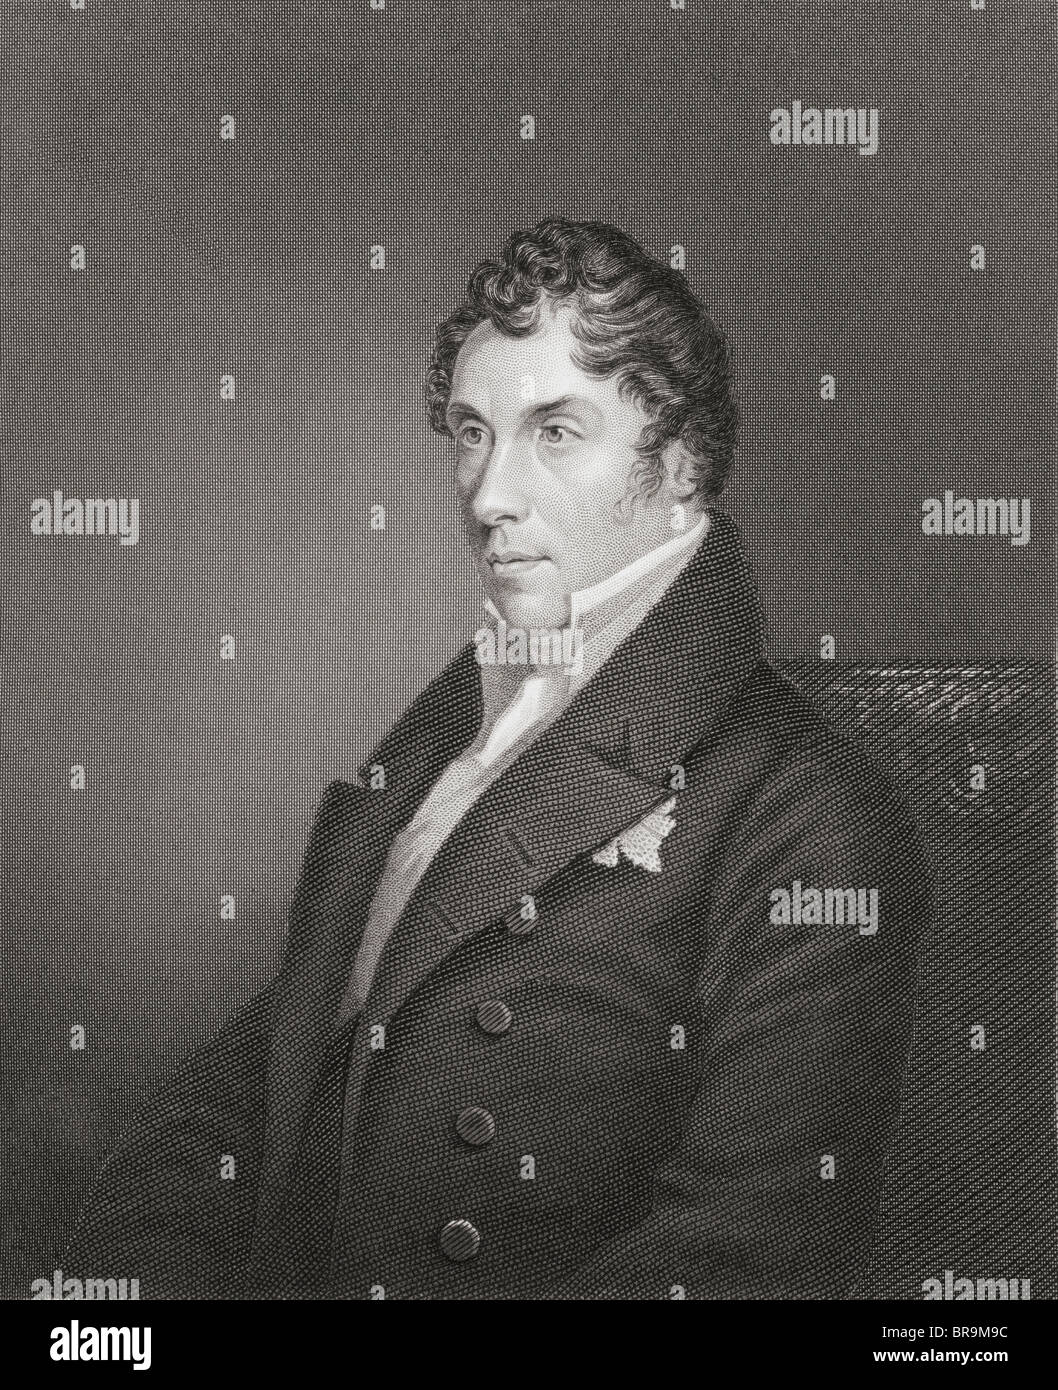 John James George Hamilton-Gordon, 5e comte d'Aberdeen, 1816 à 1864. Par les pairs britannique et homme politique français. Banque D'Images